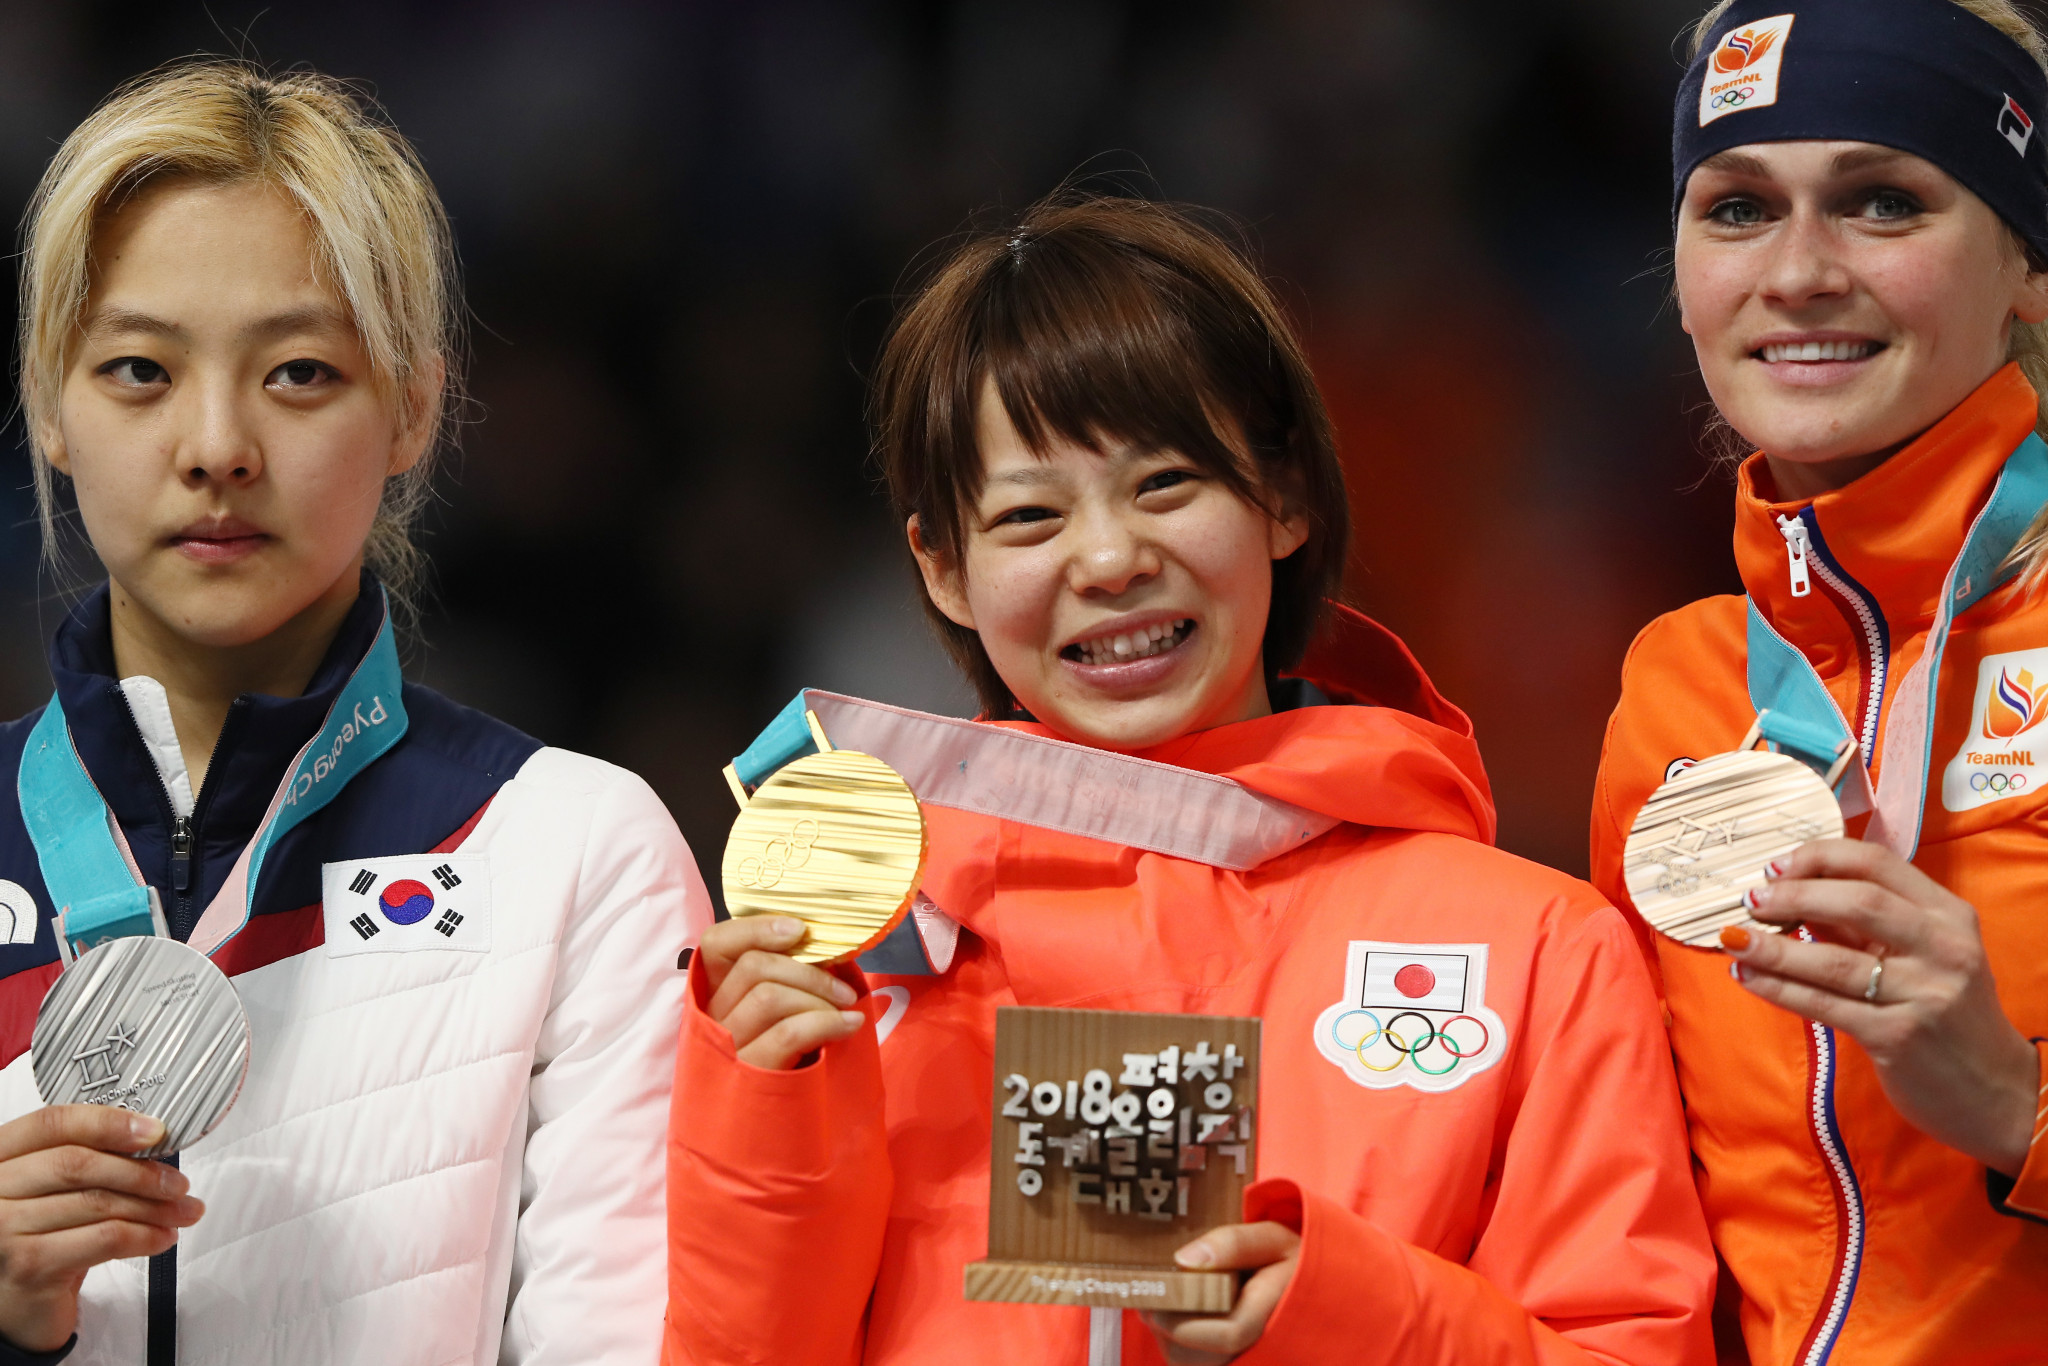 Nana Takagi, centre, won two gold medals at Pyeongchang 2018 ©Getty Images
